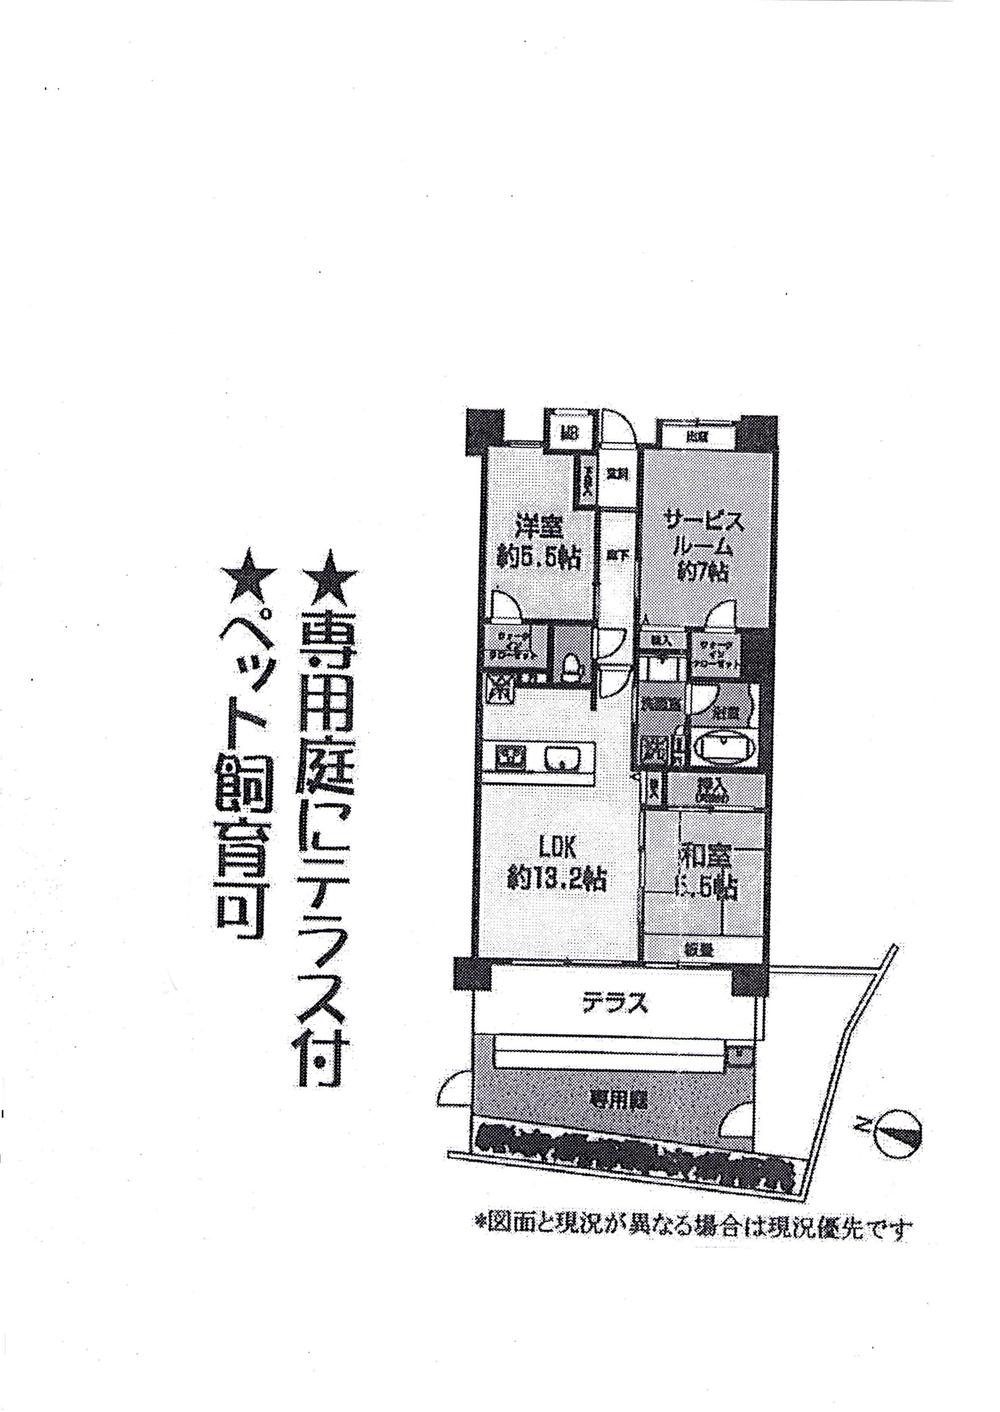 Floor plan. 2LDK + S (storeroom), Price 26,800,000 yen, Occupied area 70.06 sq m